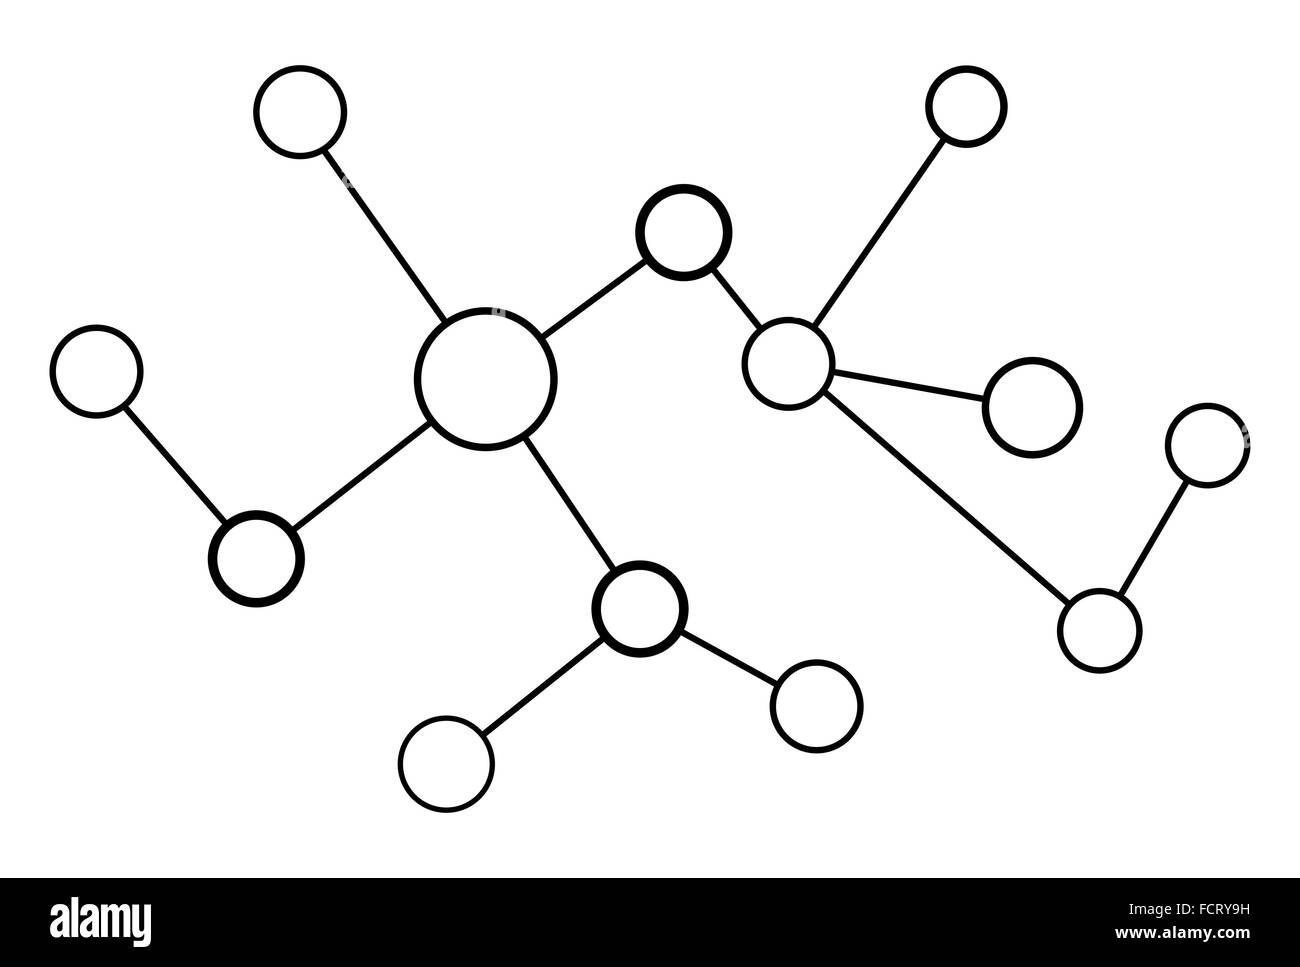 Vektor-Netzwerk Kreis abstrakt auf weißem Hintergrund Stock Vektor